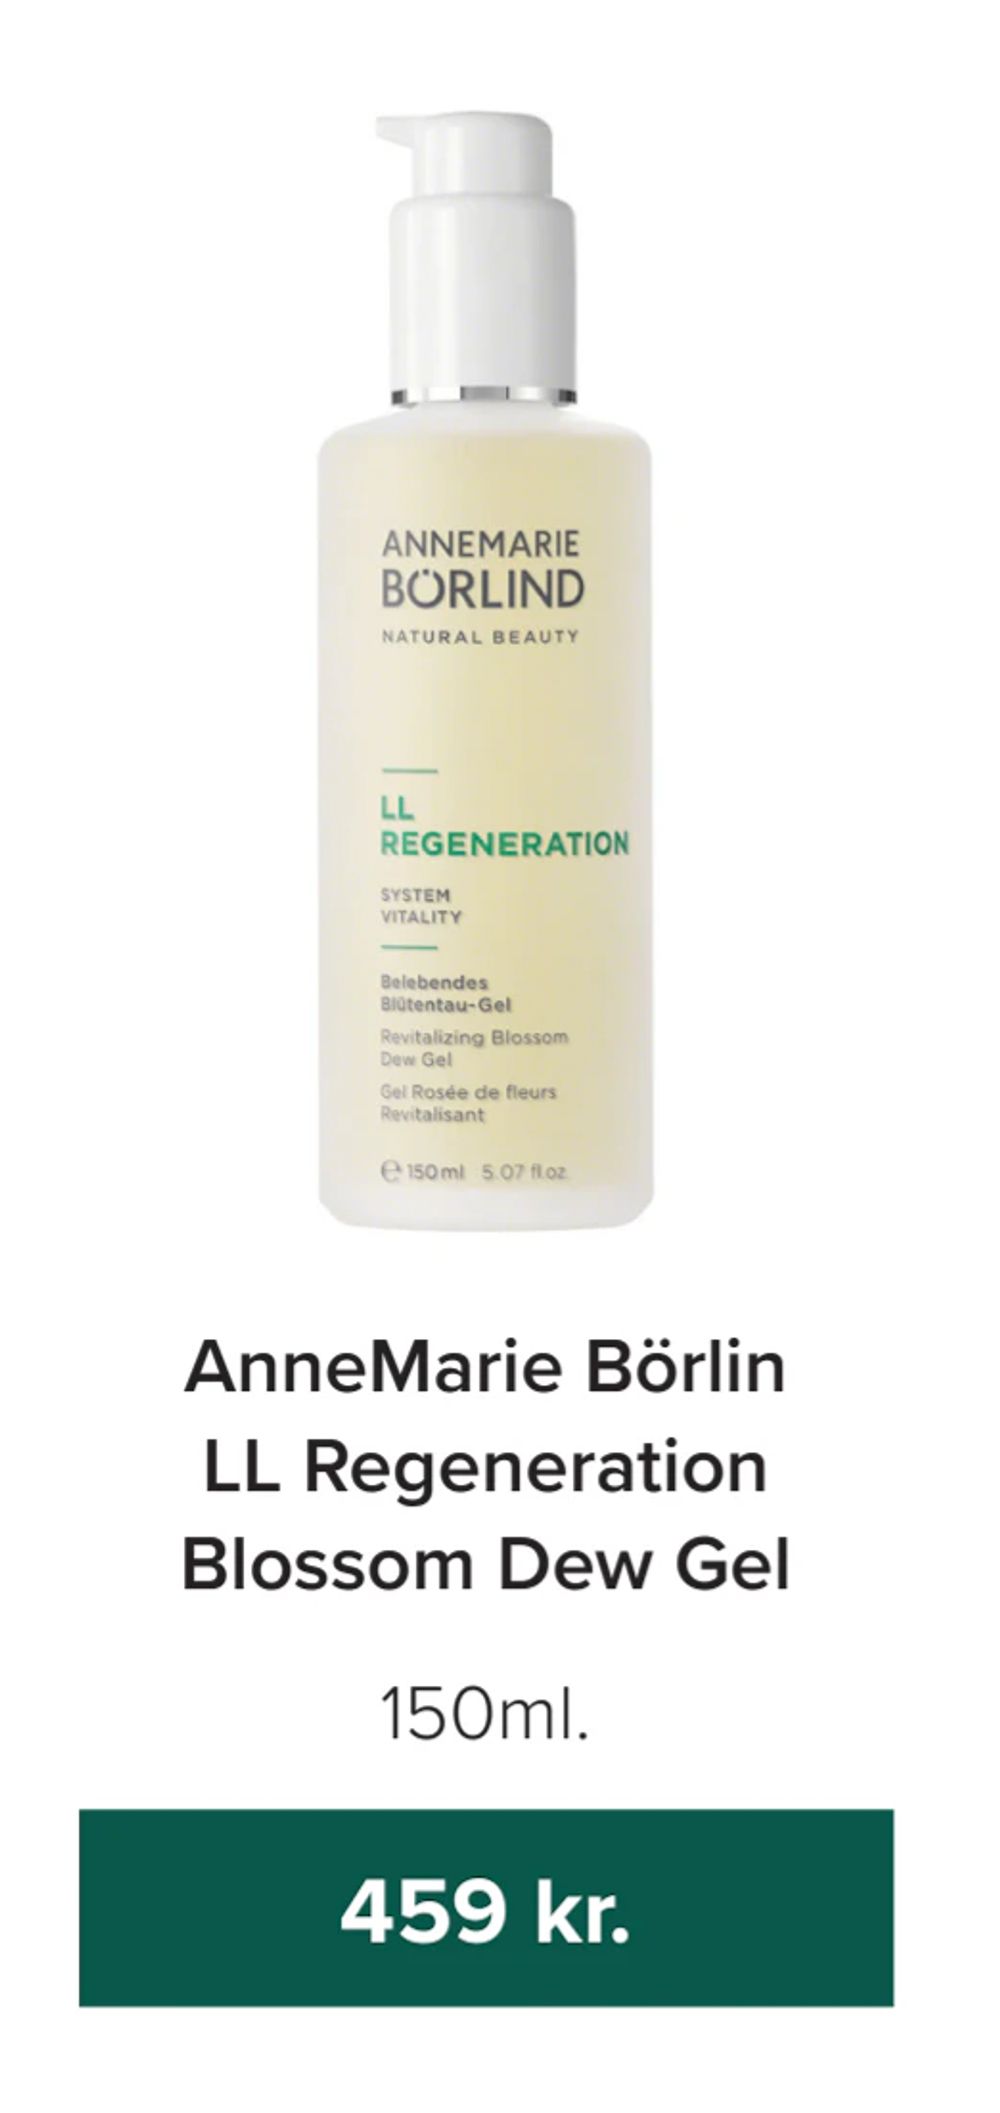 Tilbud på AnneMarie Börlin LL Regeneration Blossom Dew Gel fra Helsemin til 459 kr.